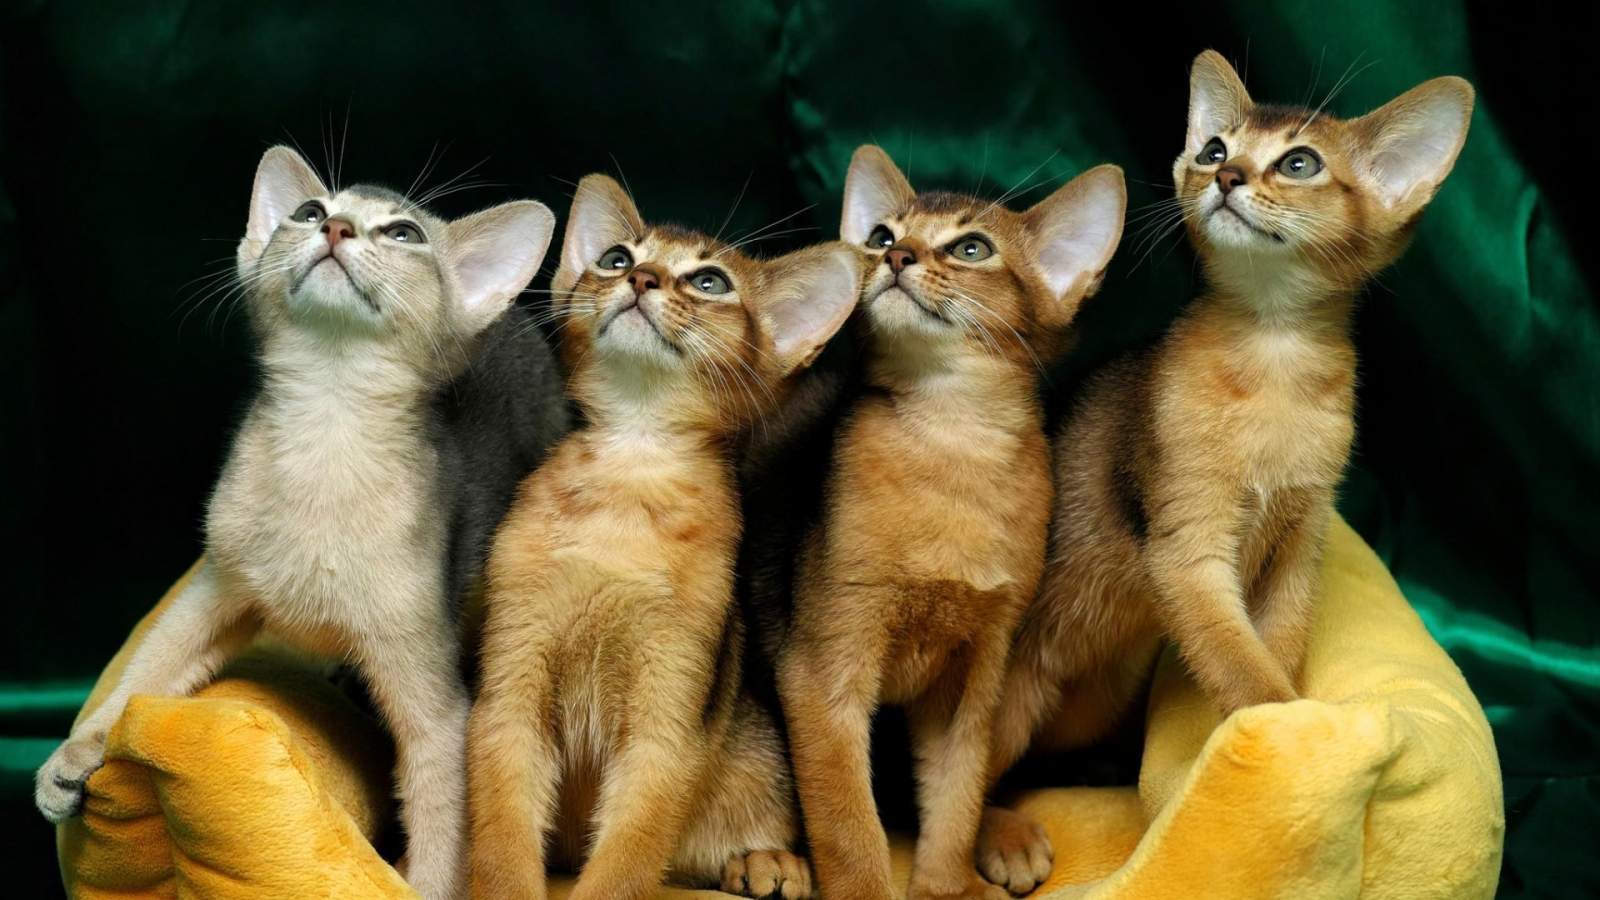 4 Cute Kittens for 1600 x 900 HDTV resolution